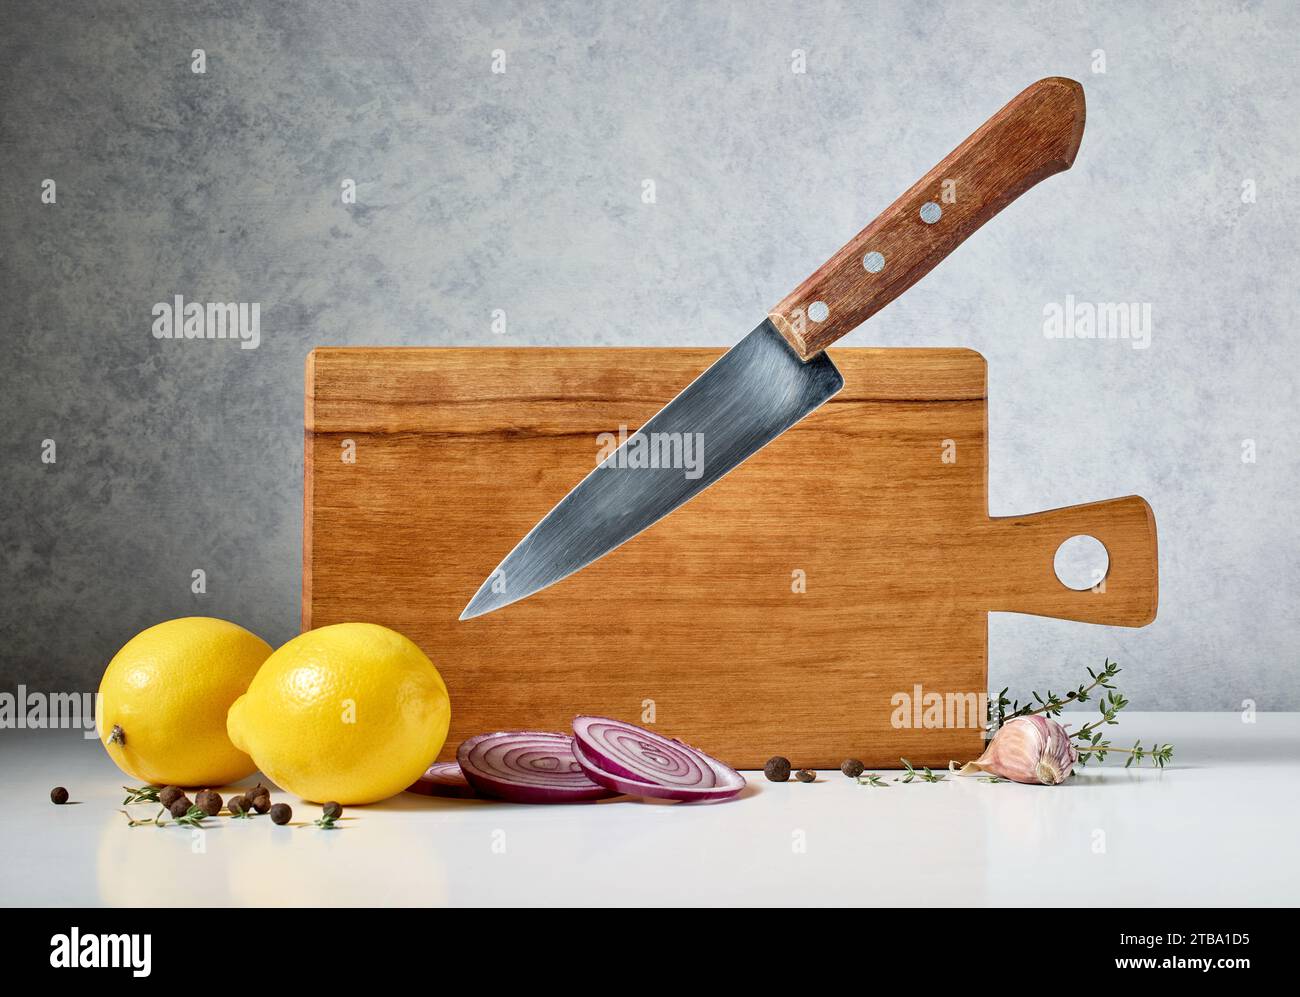 planche à découper en bois et couteau lévitant sur fond gris Banque D'Images